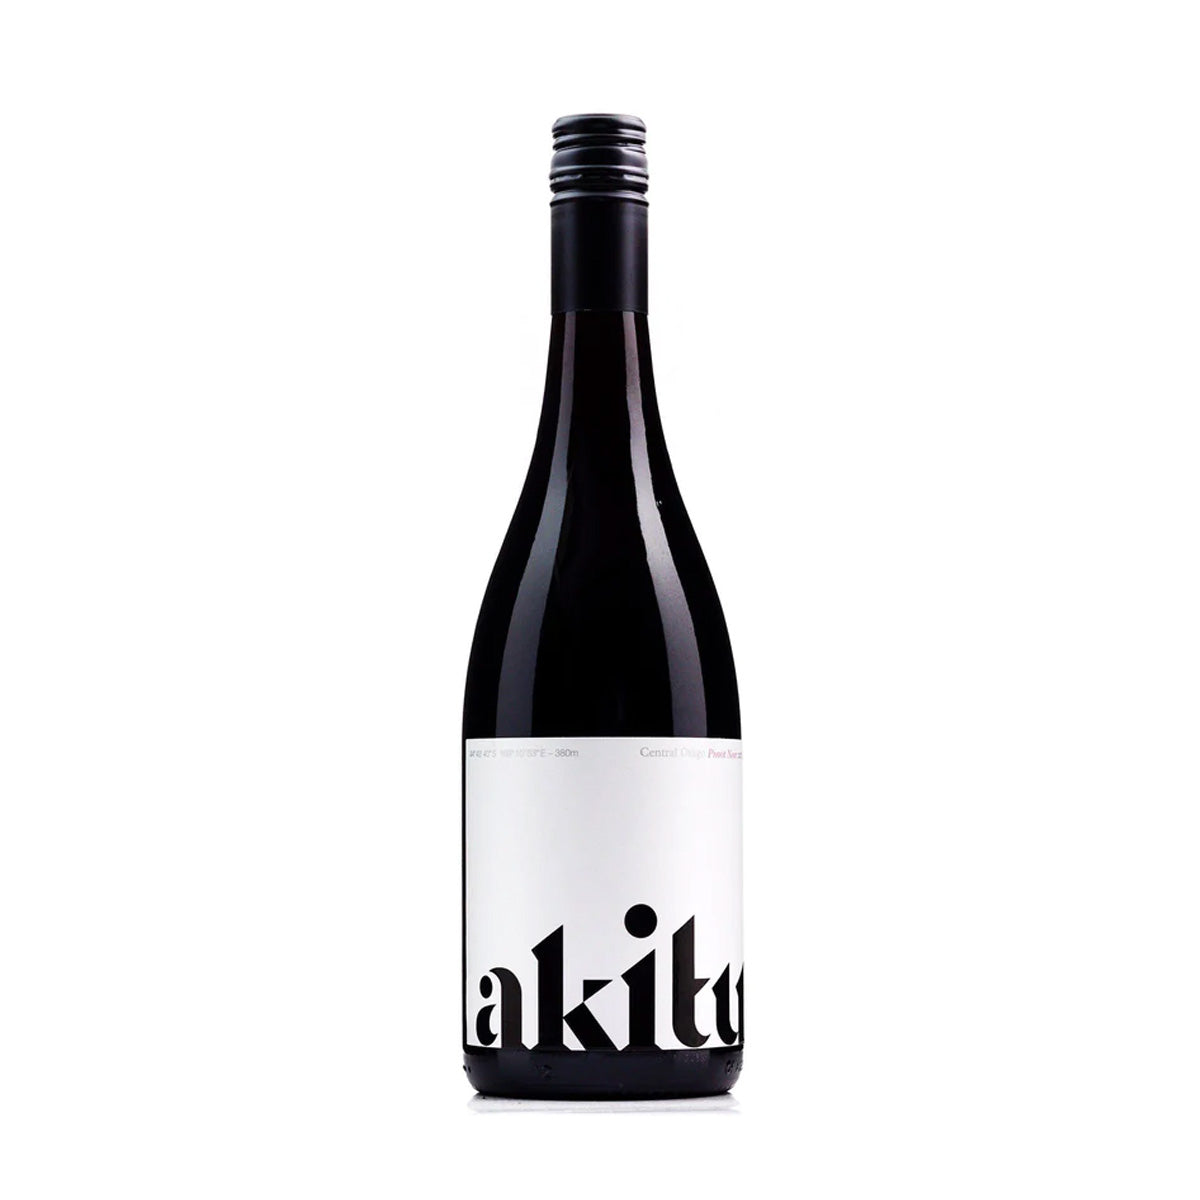 Akitu 'A2' Pinot Noir 2019